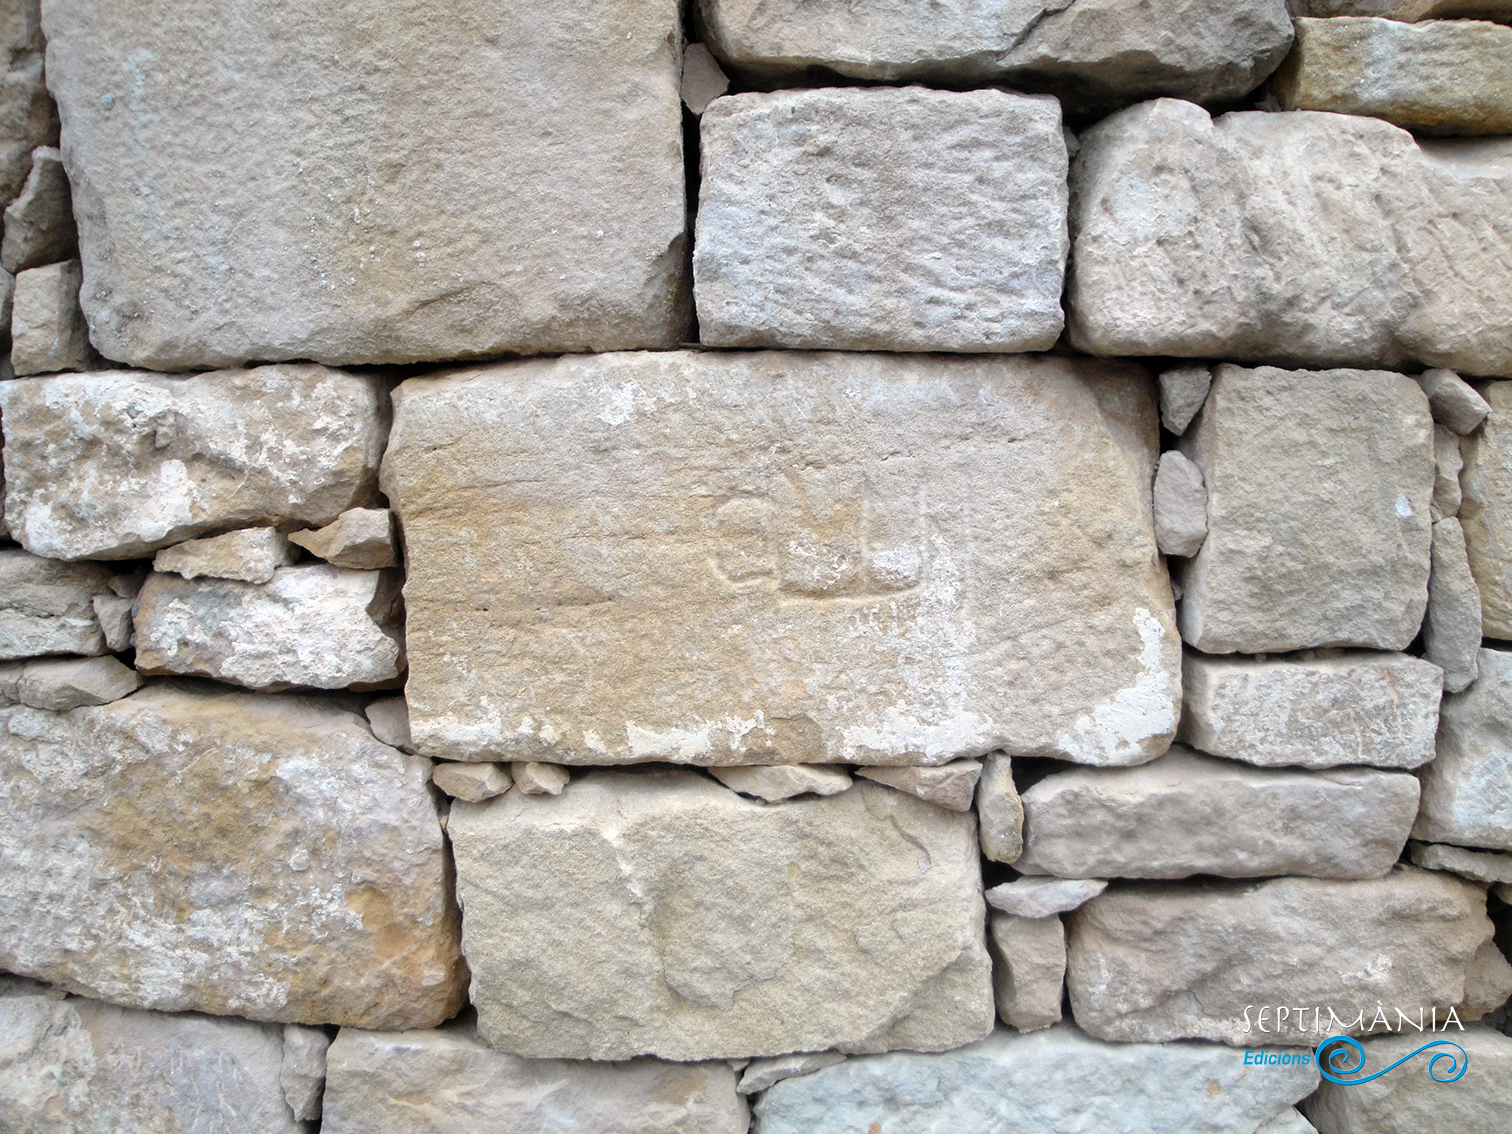 22.04.2019 Inscripció àrab provinent de l'antiga mesquita. Ara visible en un mur de la placeta entre el castell i l'antiga església.  La Granadella. -  Jordi Bibià